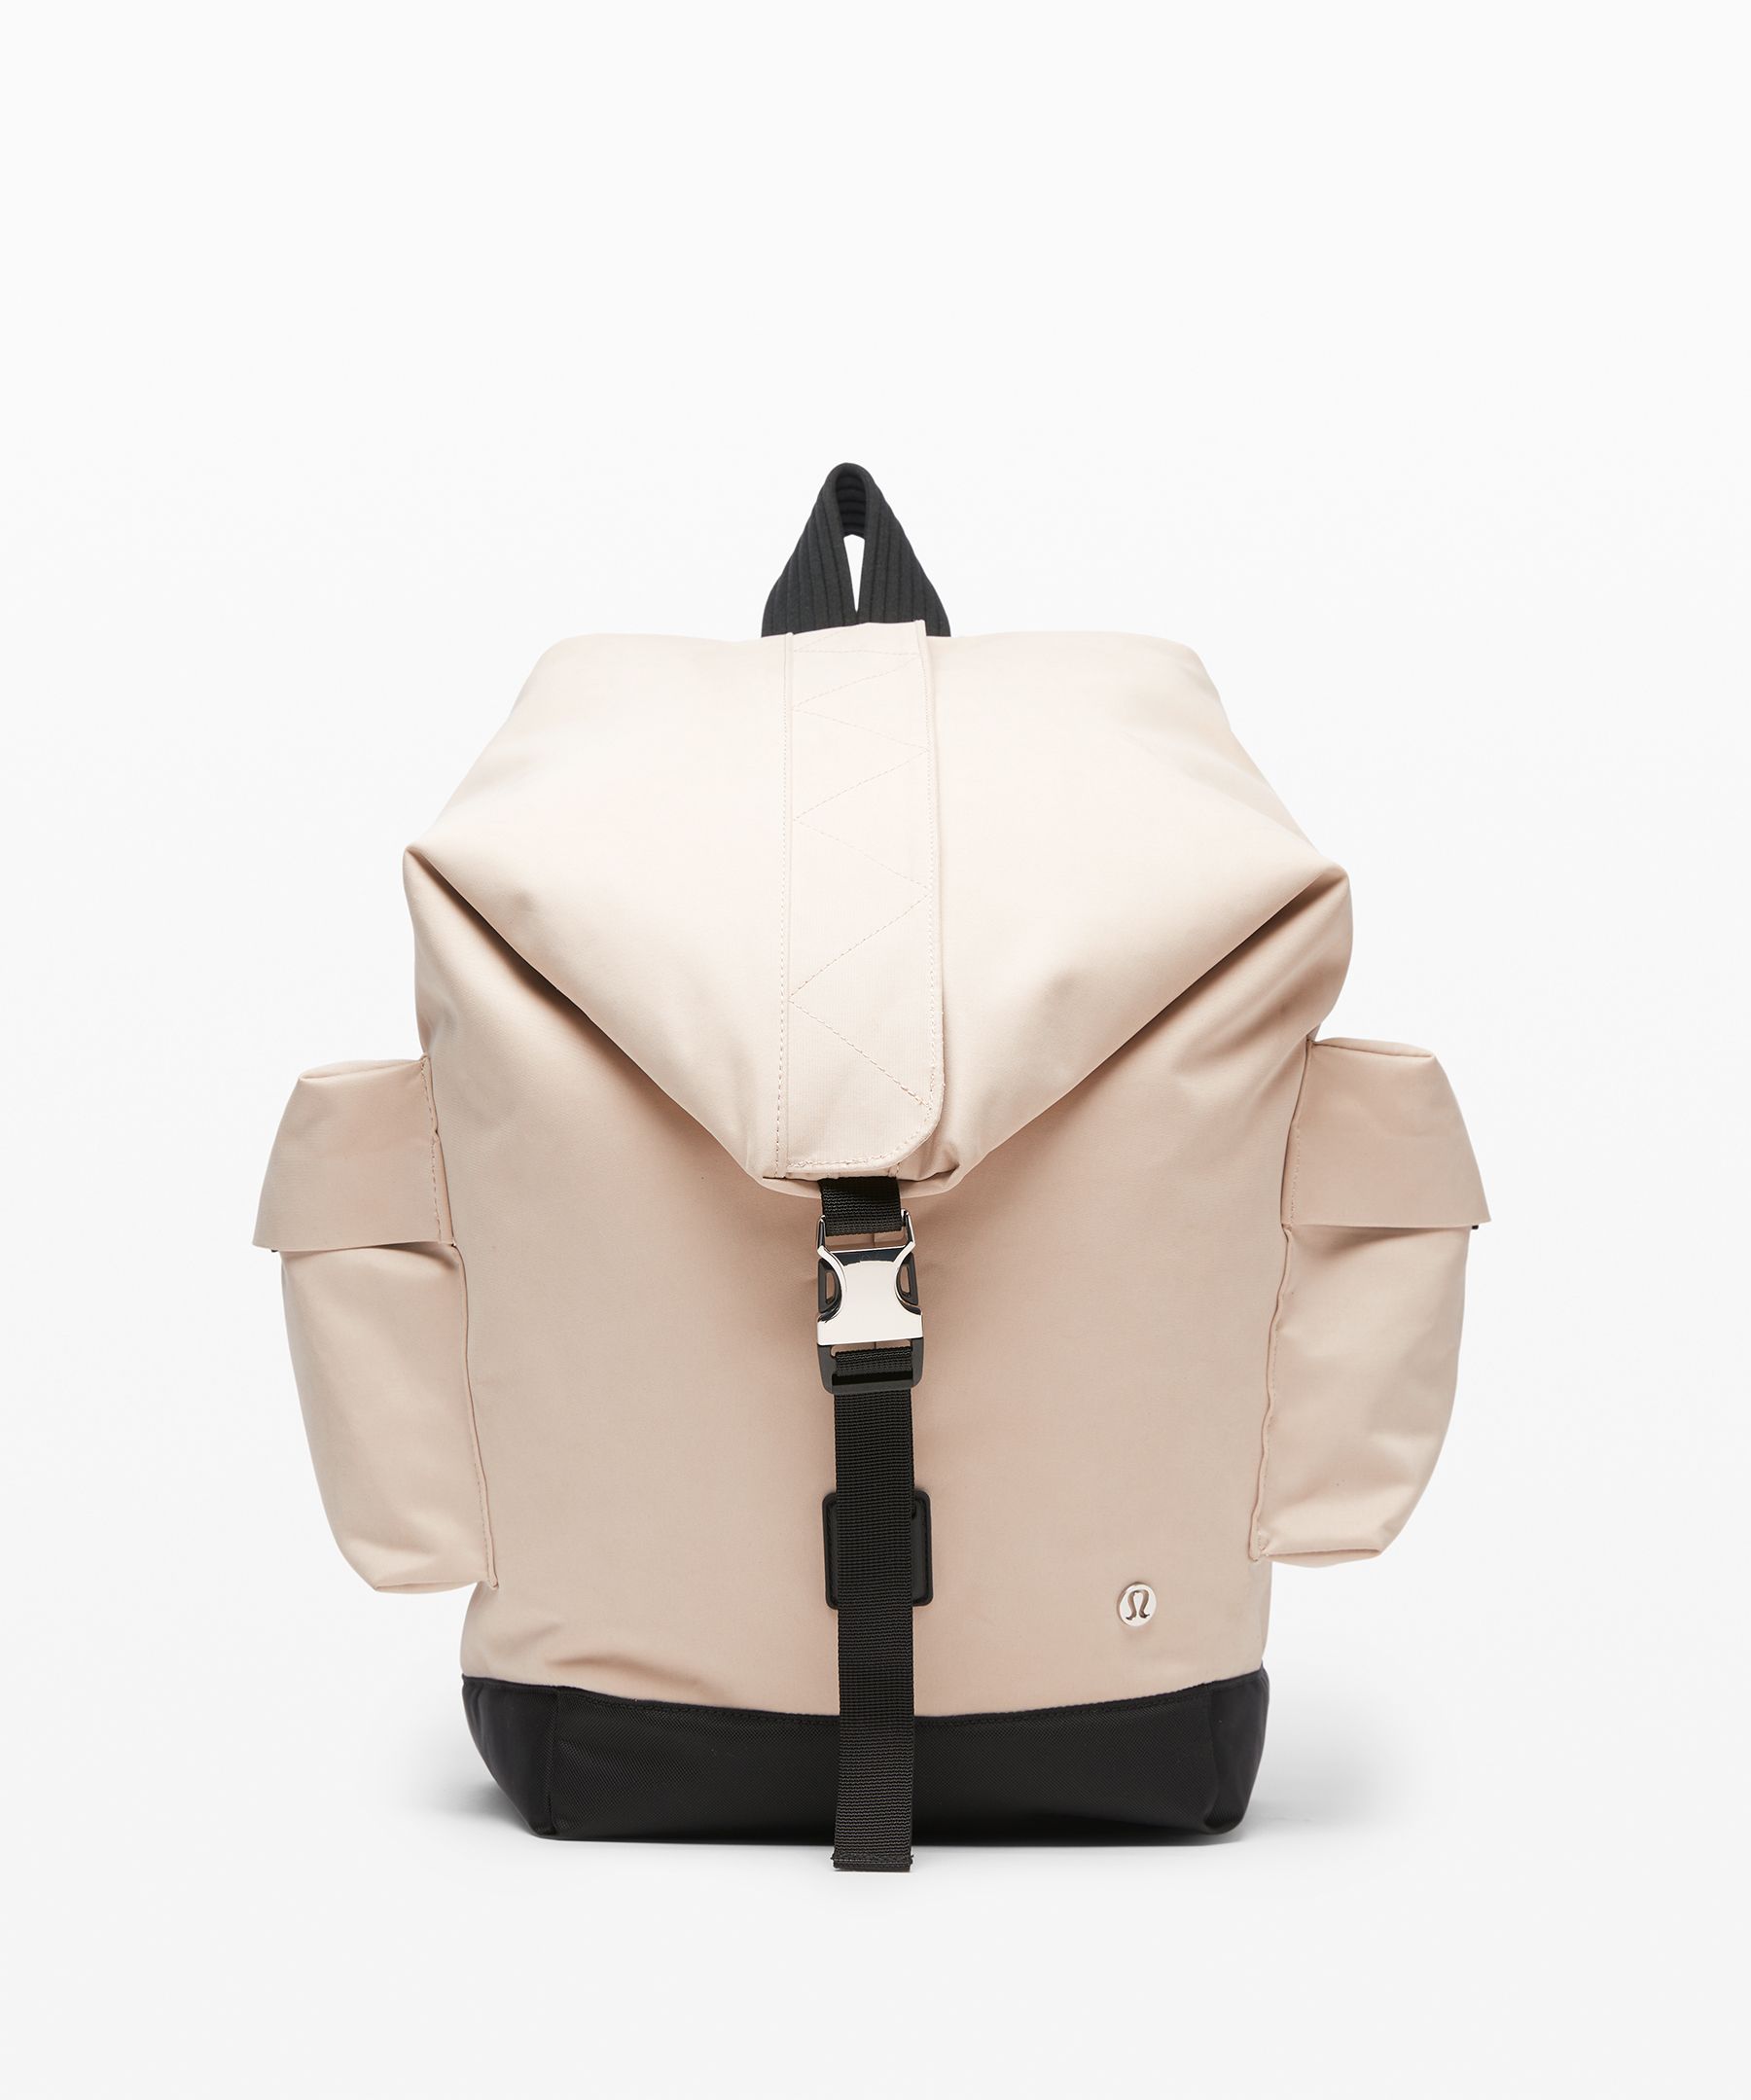 lululemon bag backpack